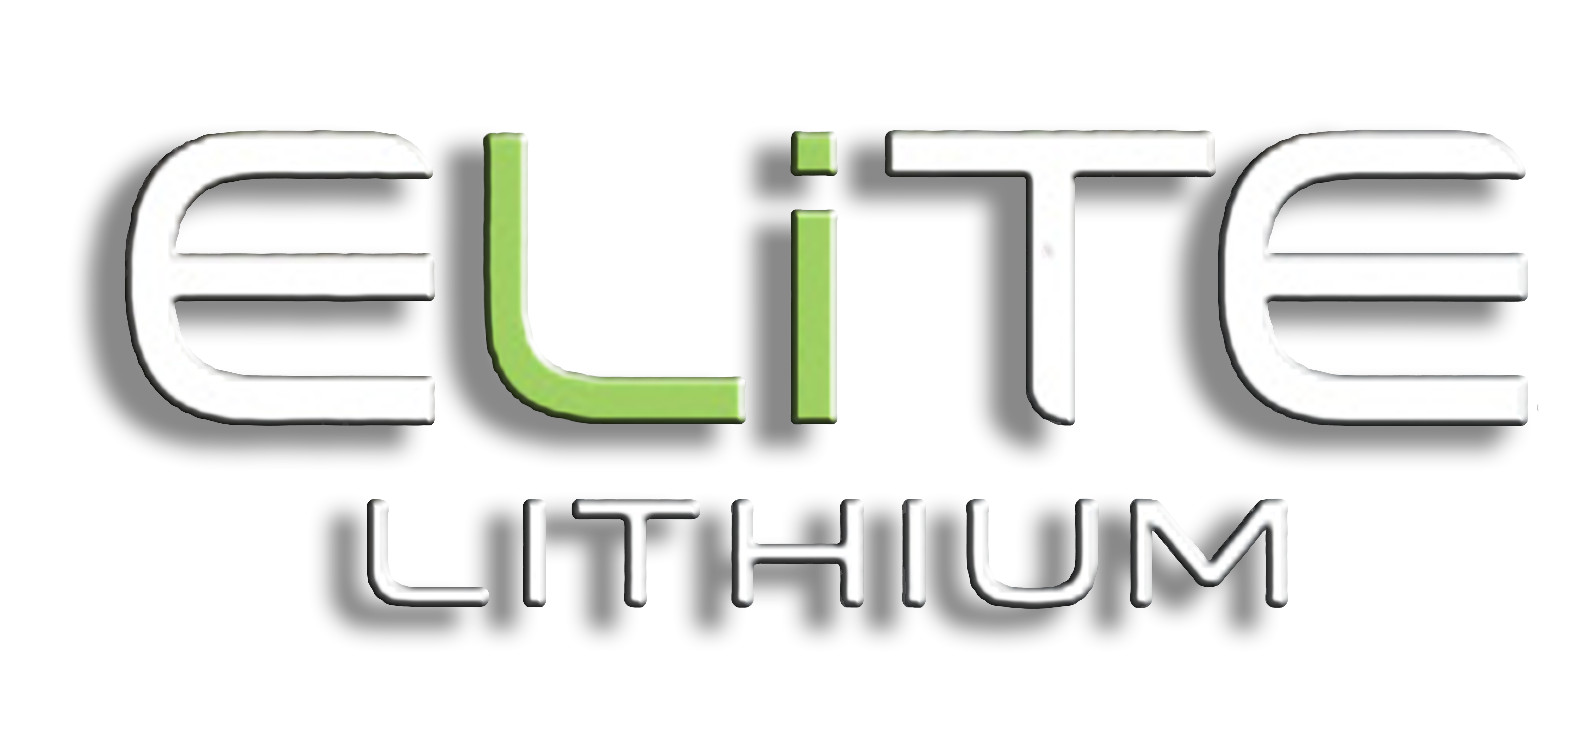 Elite Lithium